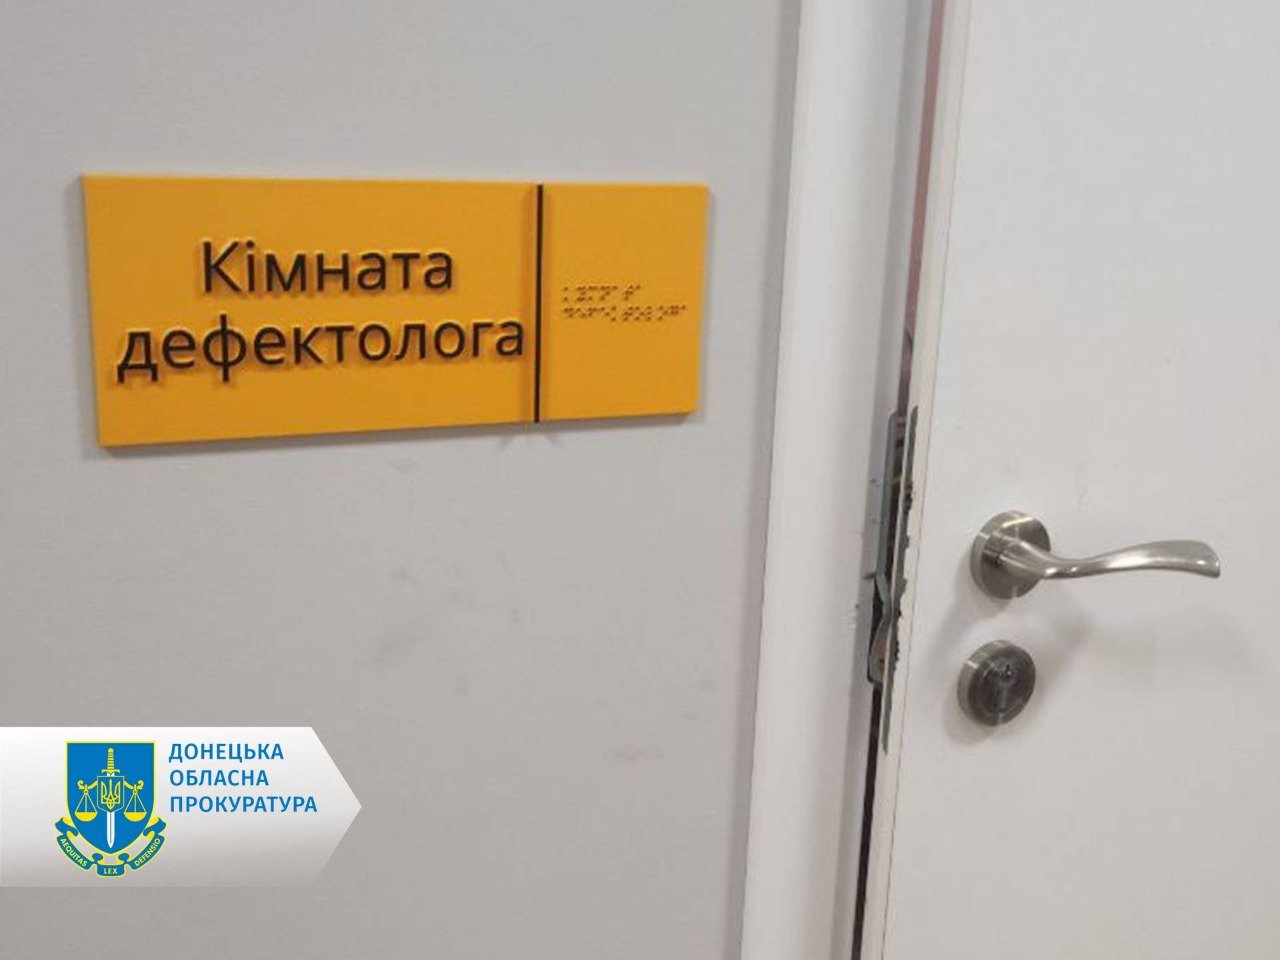 взламані двері в бюджетній установі Донецької області